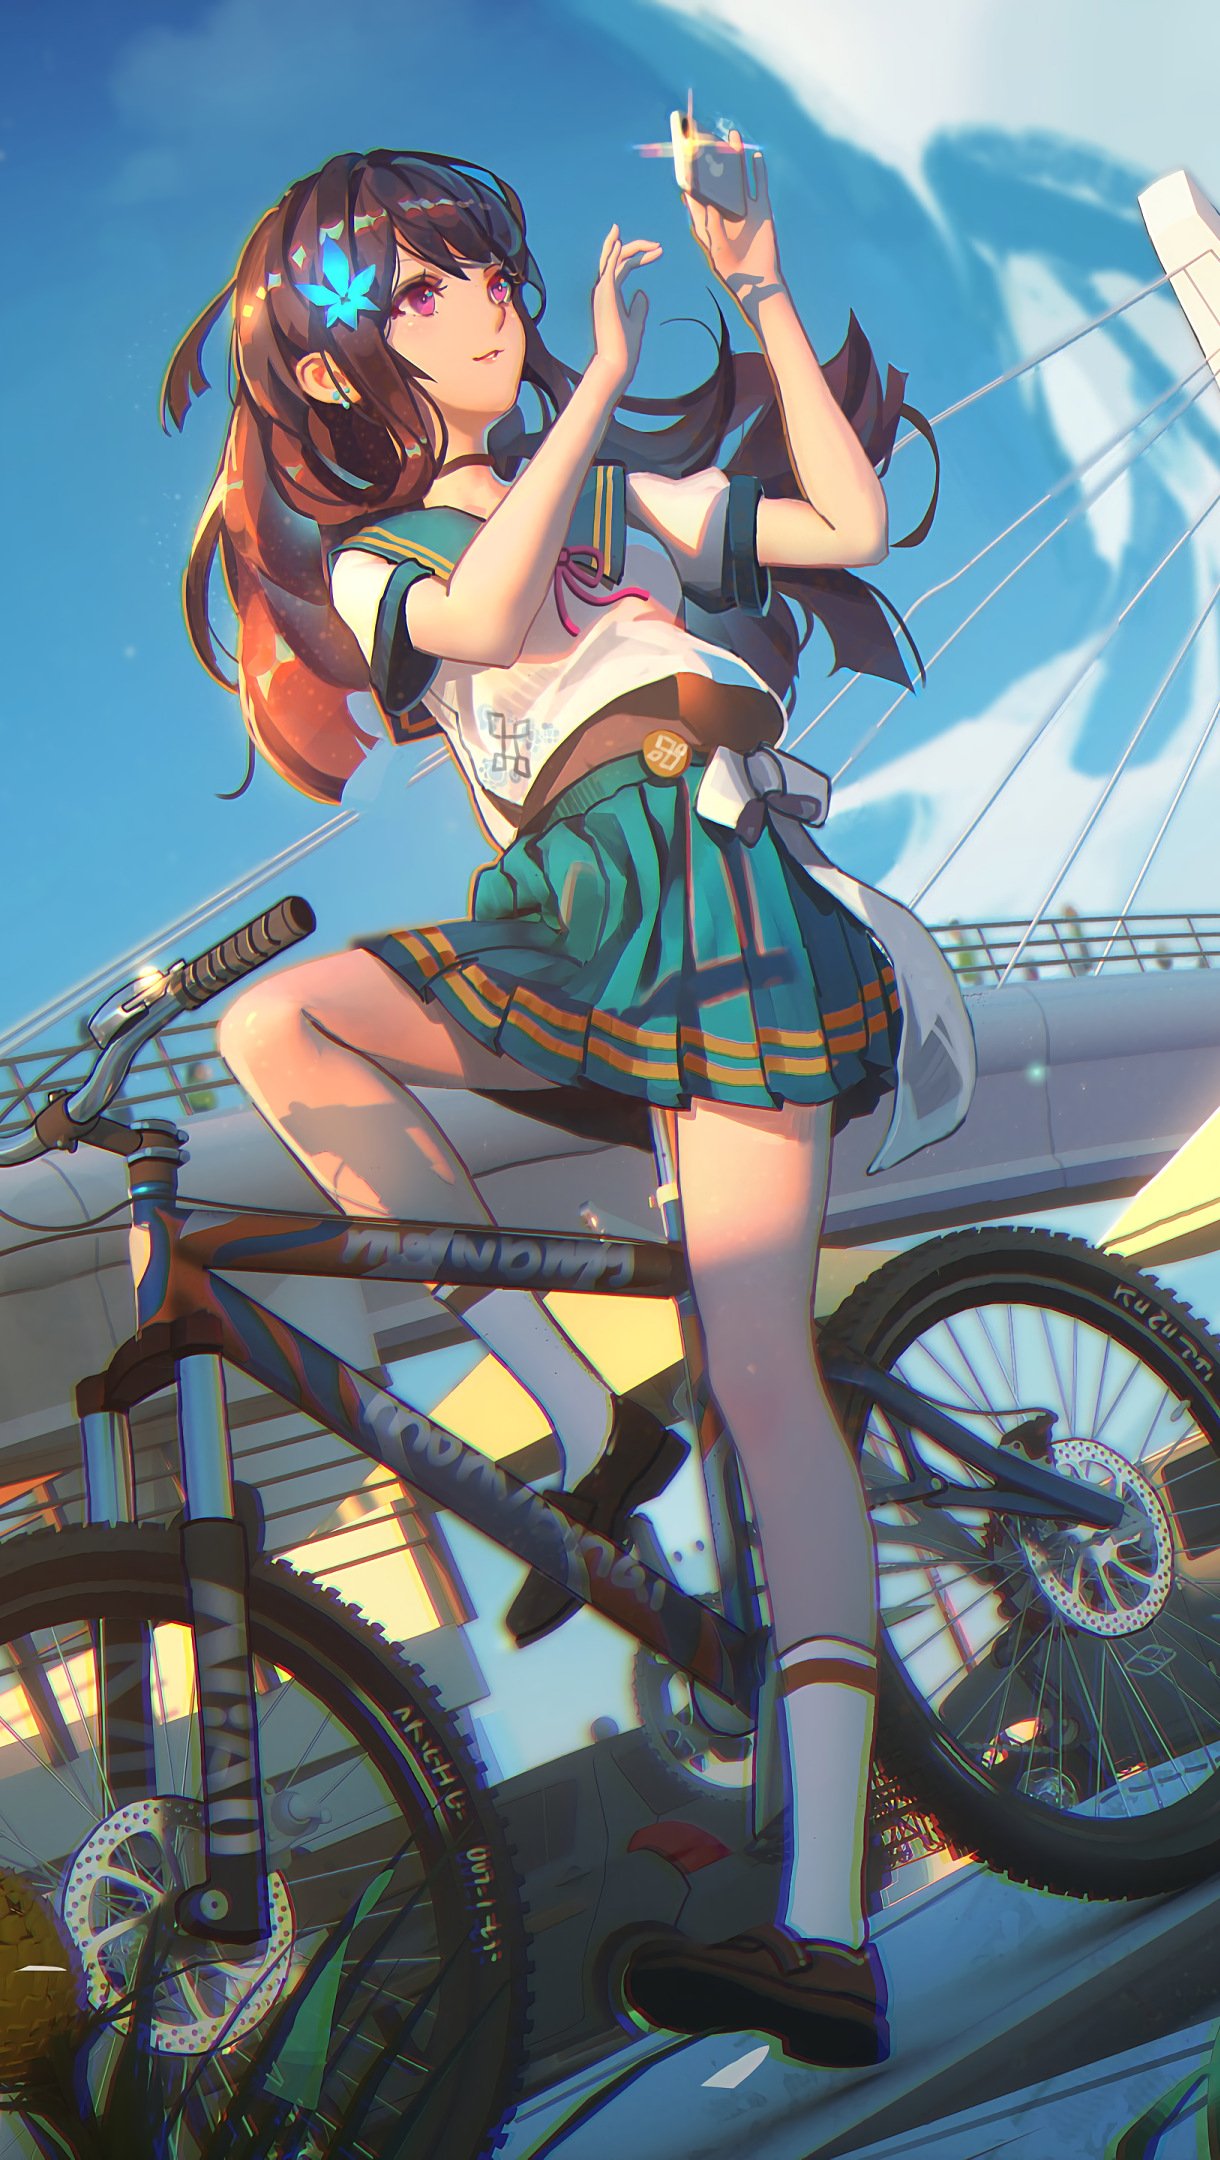 Fondos de pantalla Anime chica estudiante en bicicleta Vertical